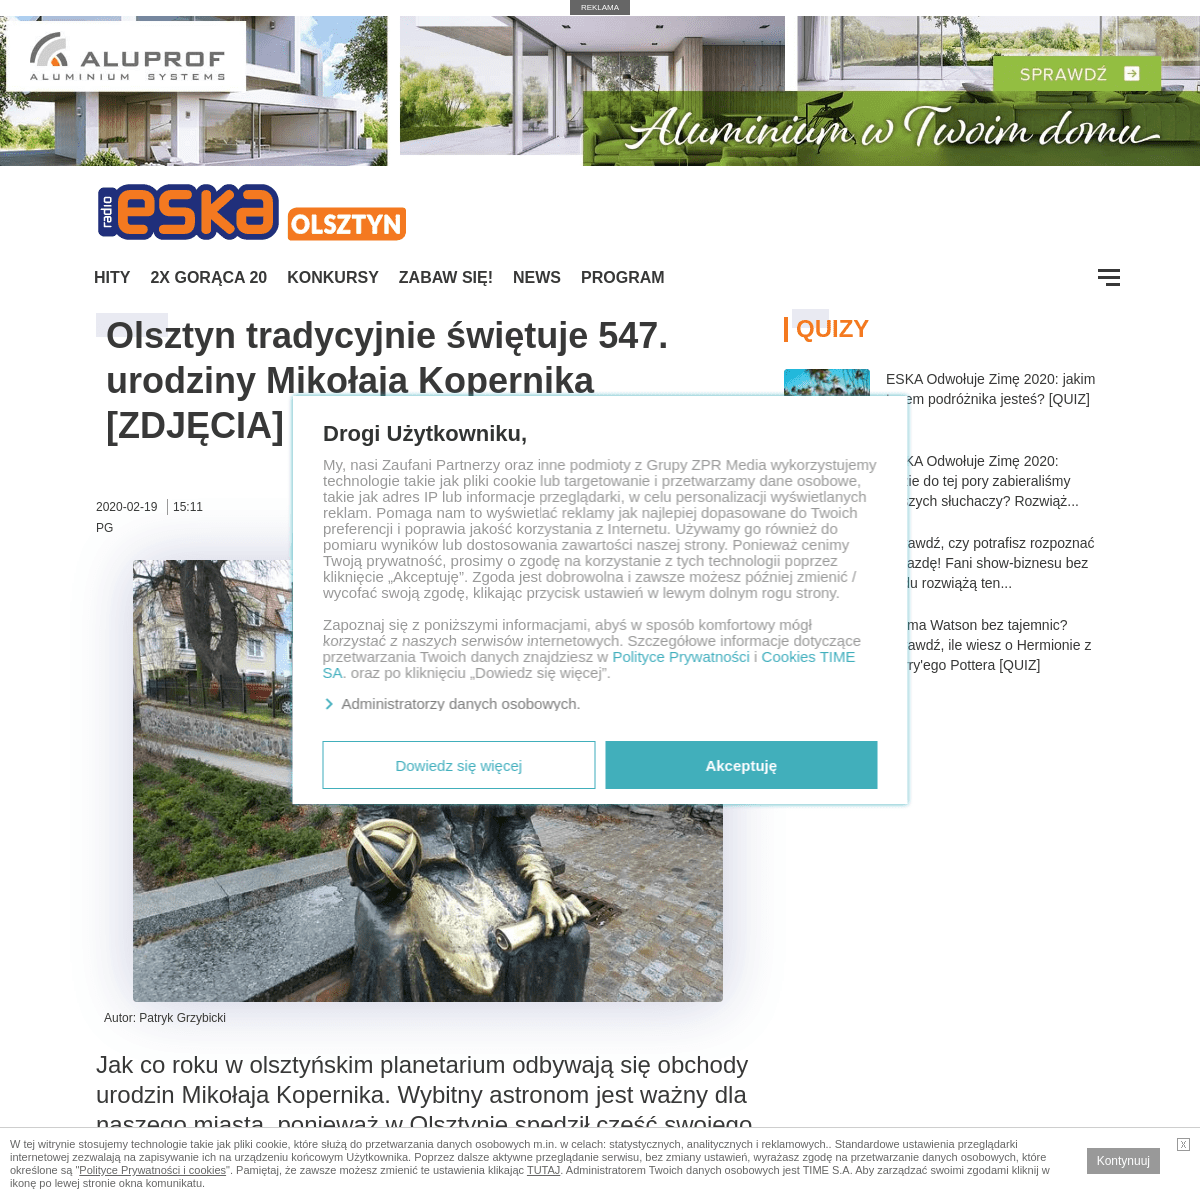 A complete backup of www.eska.pl/olsztyn/olsztyn-tradycyjnie-swietuje-547-urodziny-mikolaja-kopernika-zdjecia-aa-q75x-1FG9-uX1h.